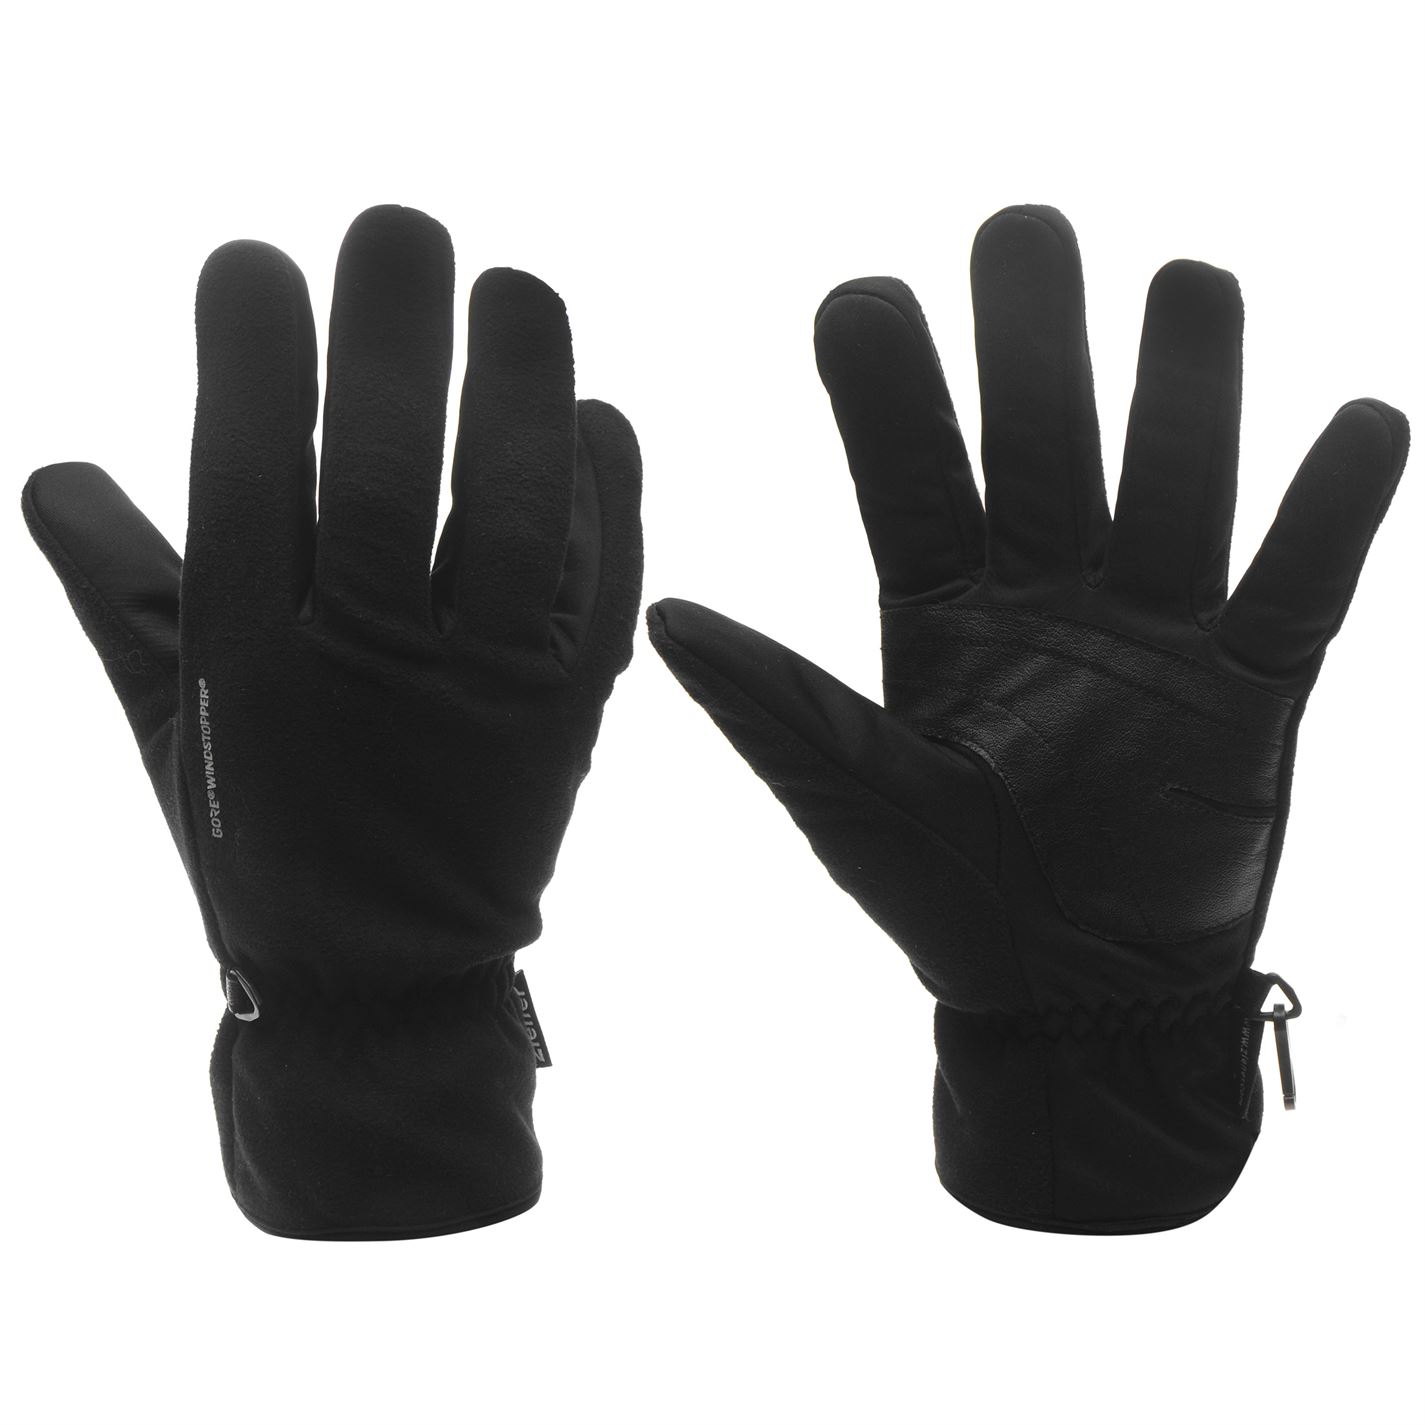 Men's gloves Ziener Windstopp